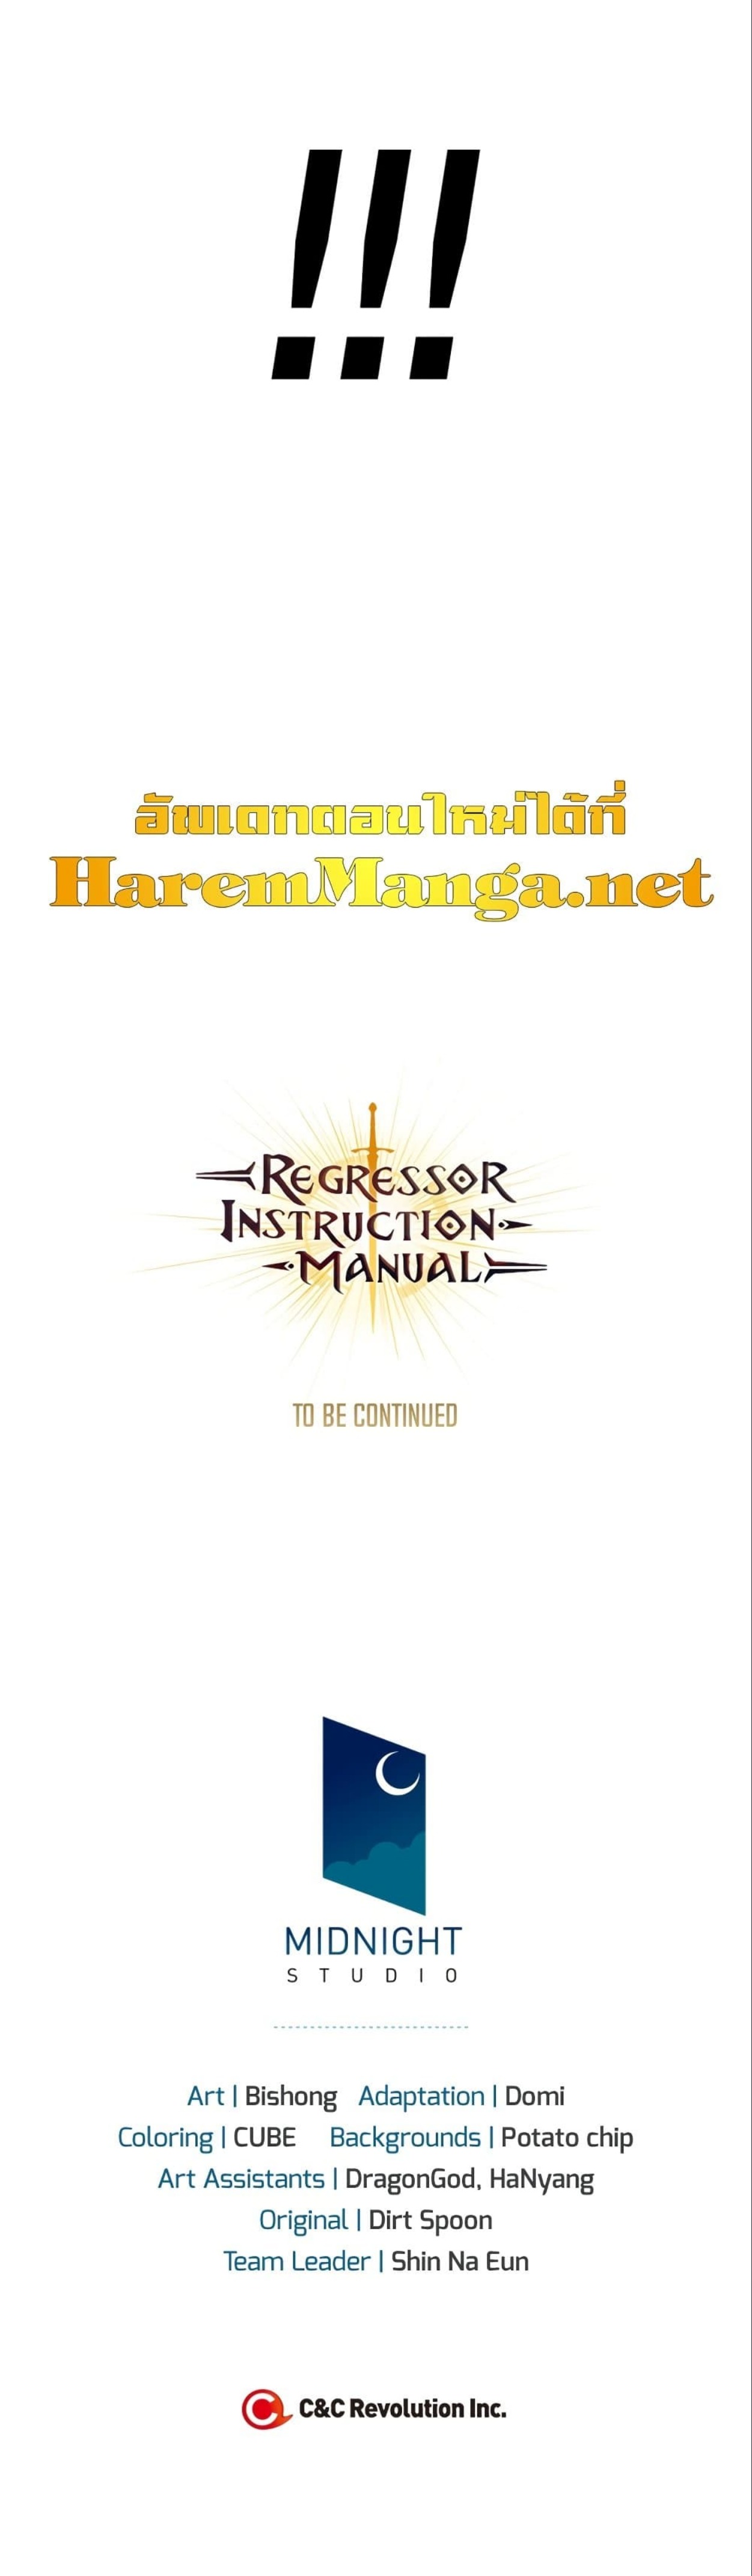 Regressor-Instruction-Manual-41-14.jpg